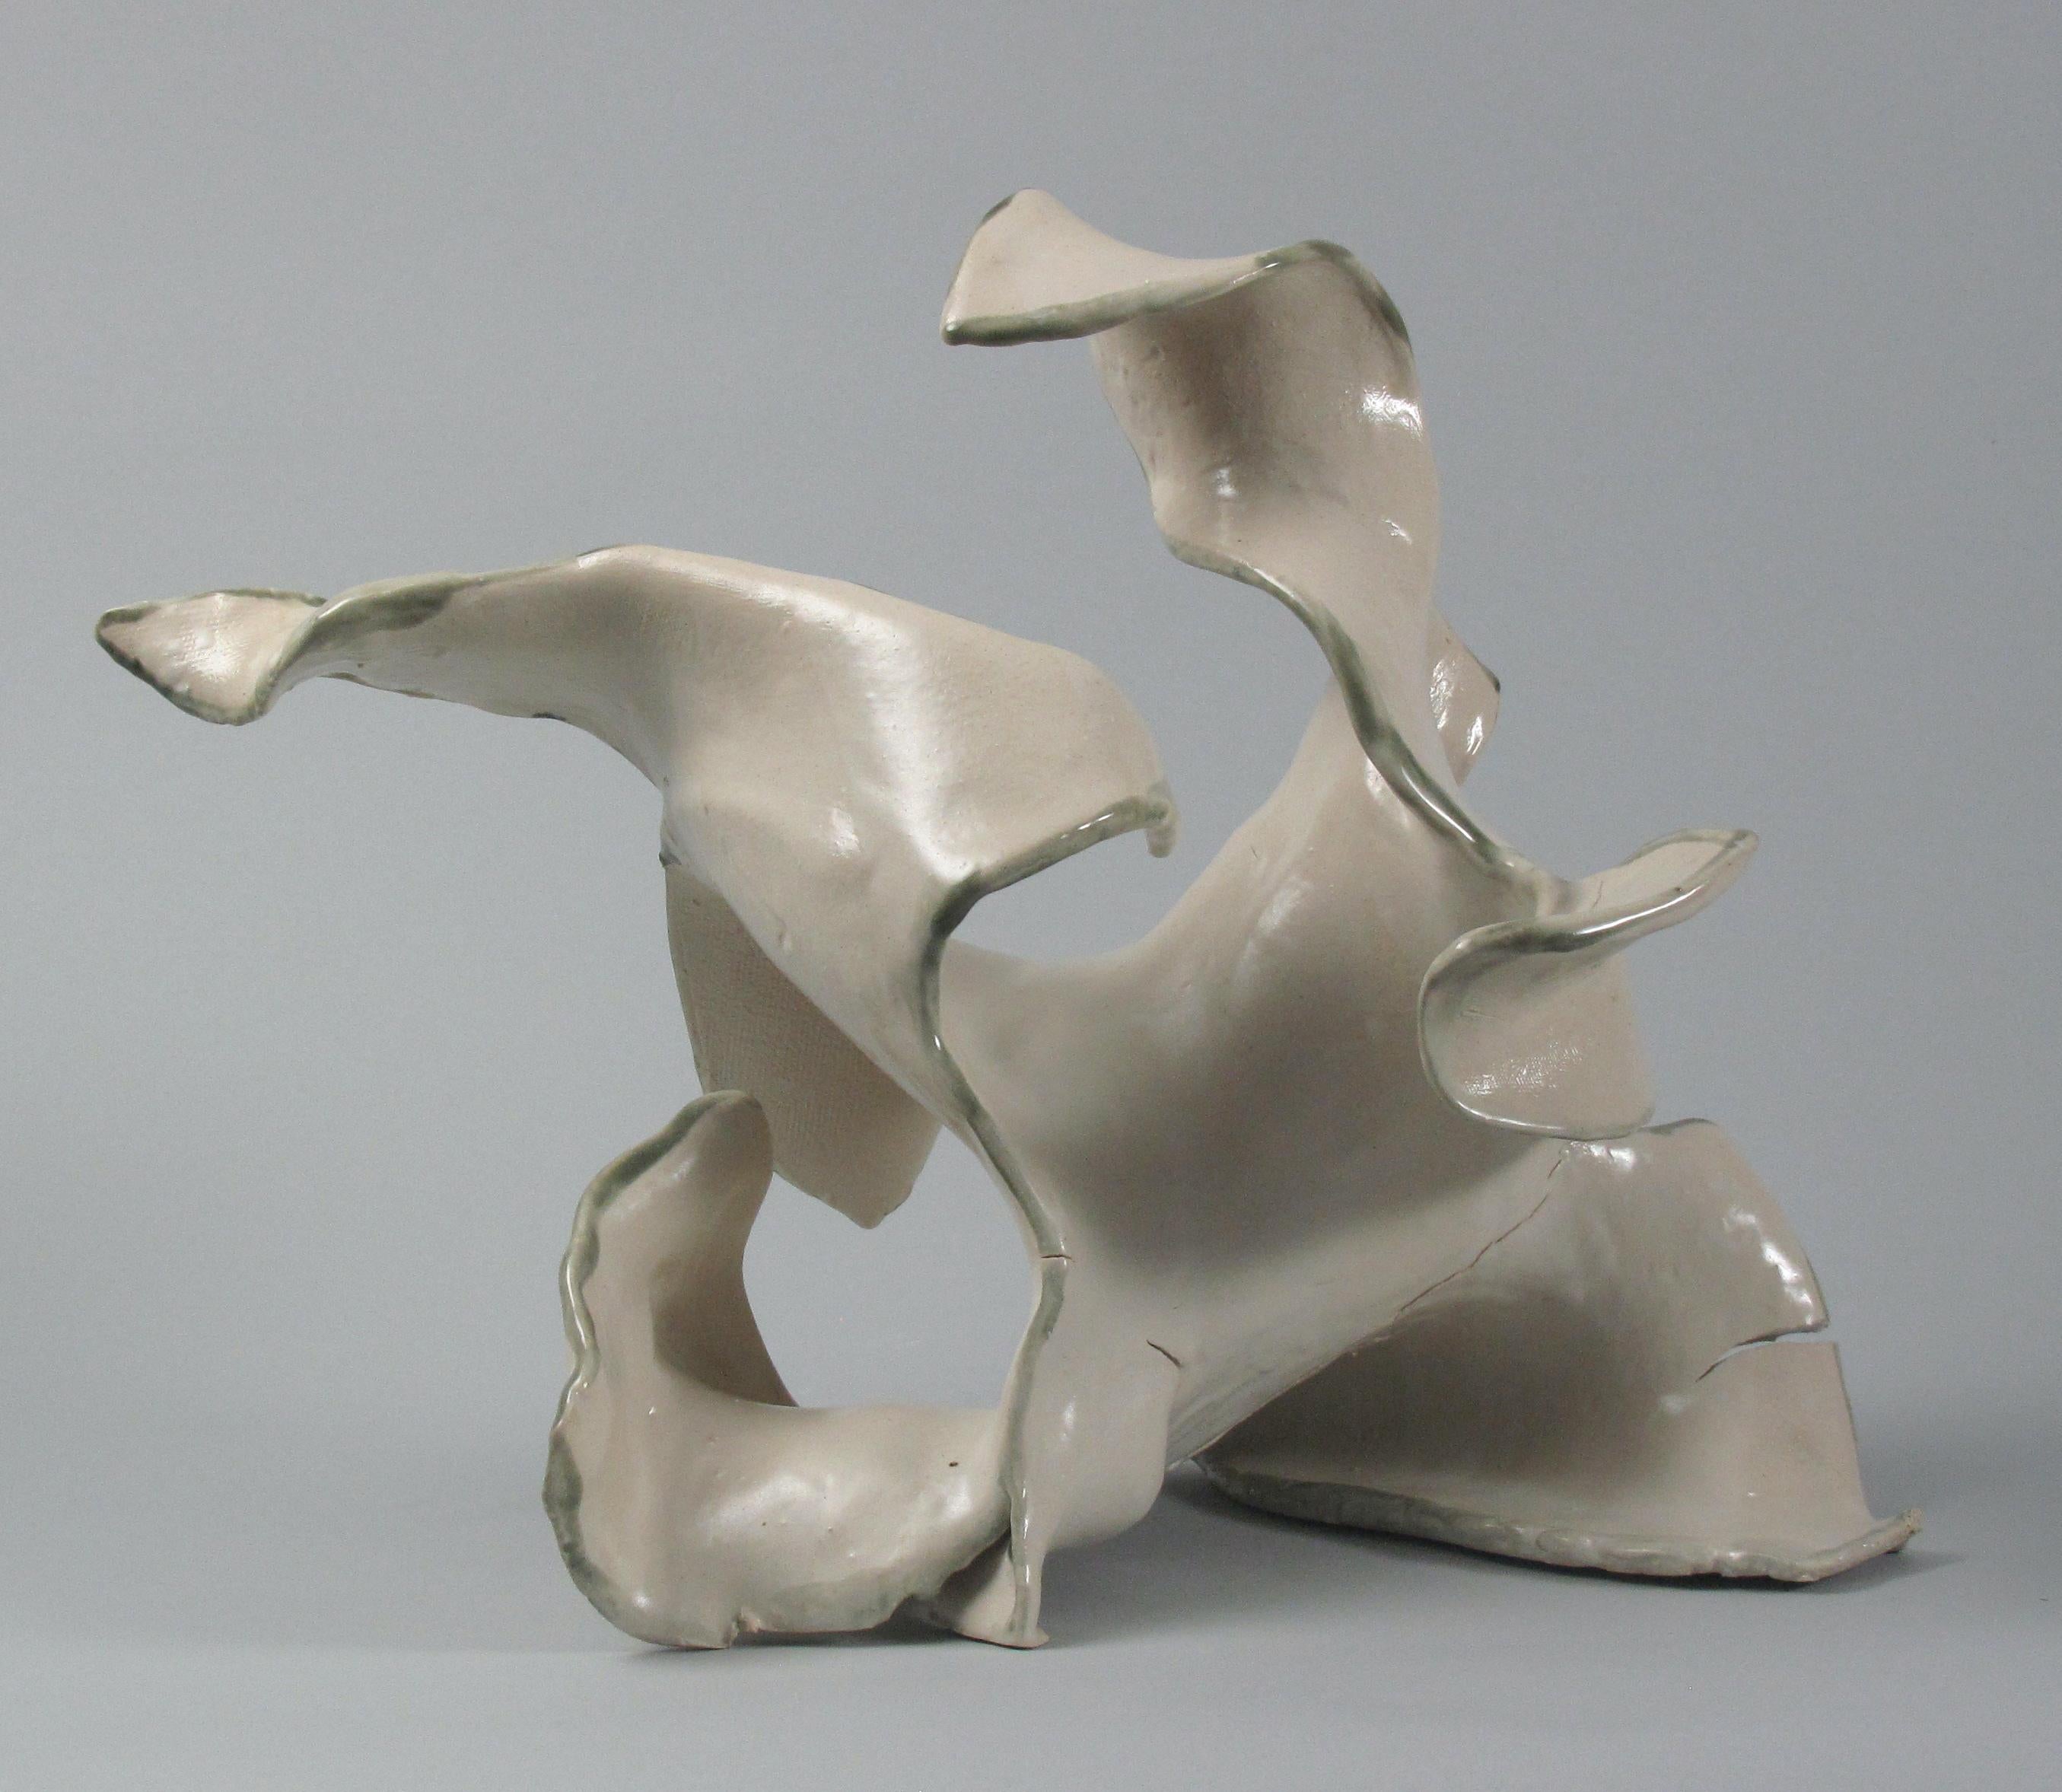 Abstract Sculpture Sara Fine-Wilson - "Fractured", gestuel, céramique, sculpture, blanc, crème, gris, sarcelle, grès